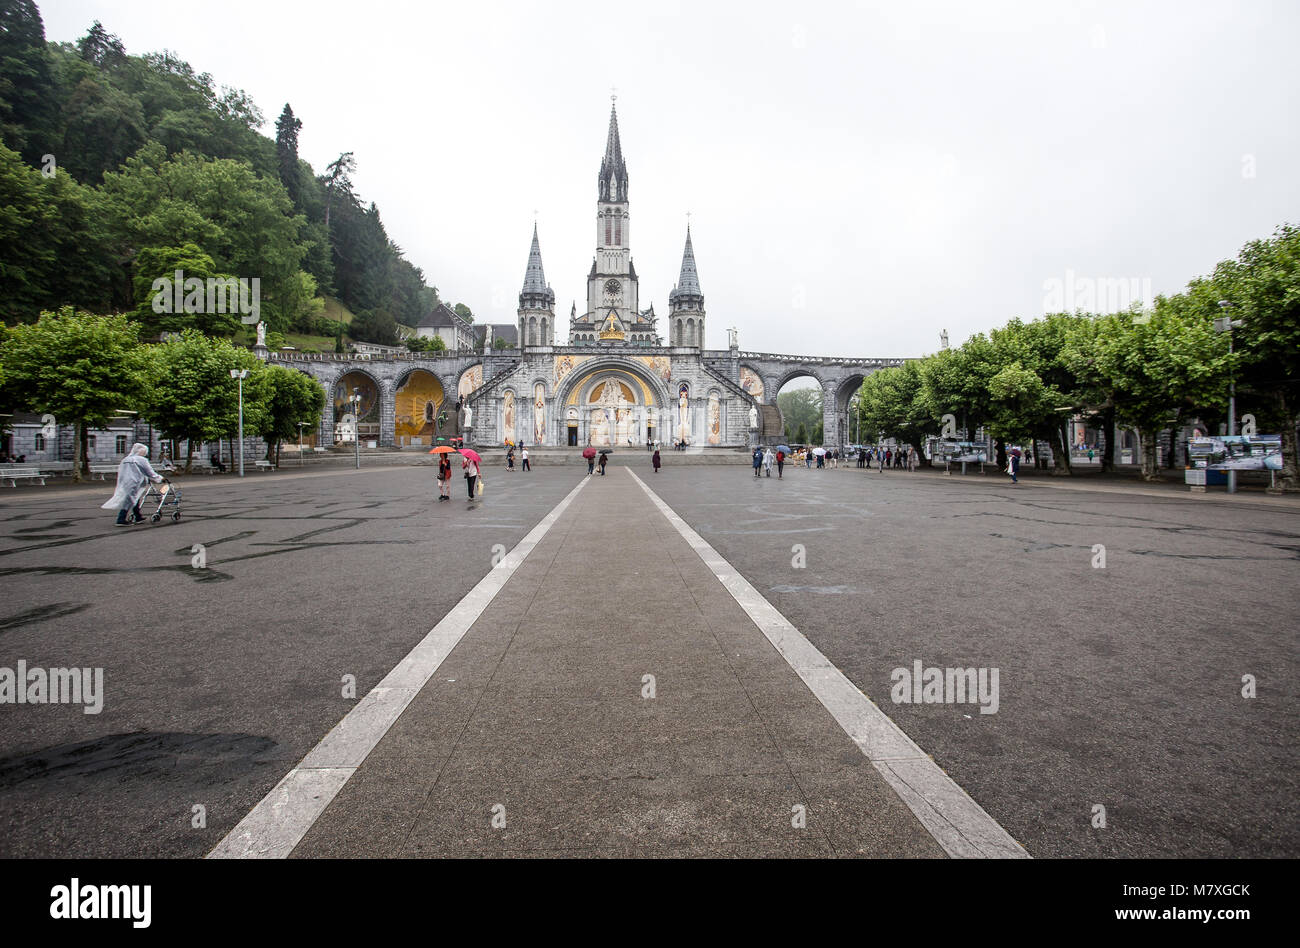 LOURDES, FRANCE - JUNE 10, 2016: Notre Dame du Rosaire de Lourdes ...